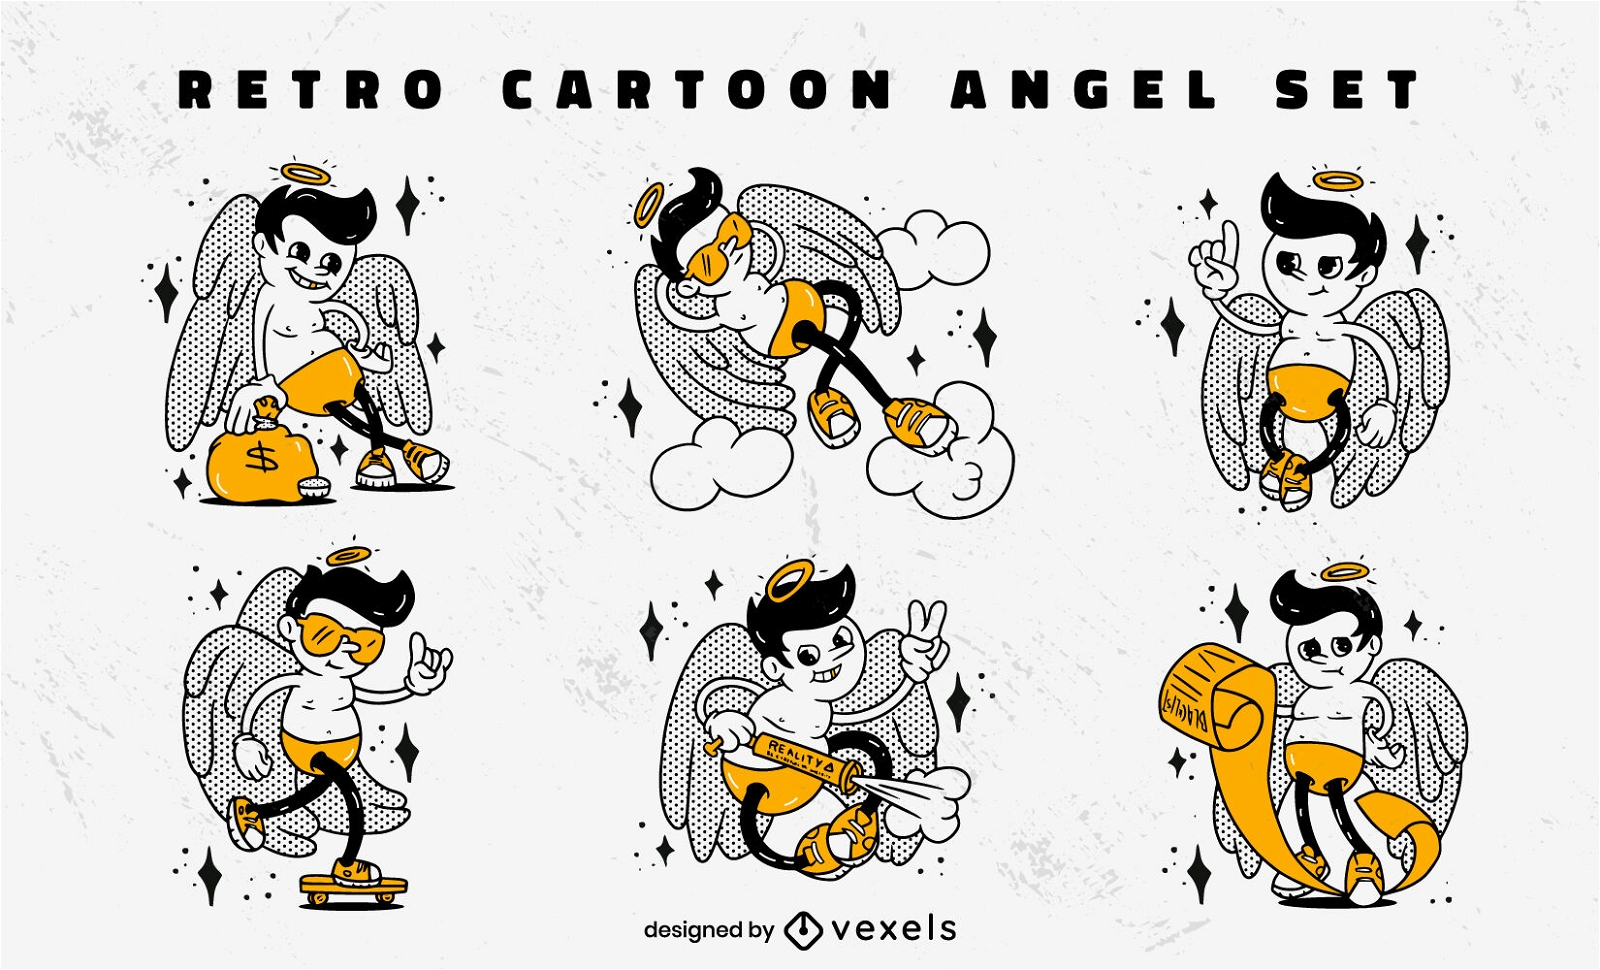 Retro cartoon funny angels character set